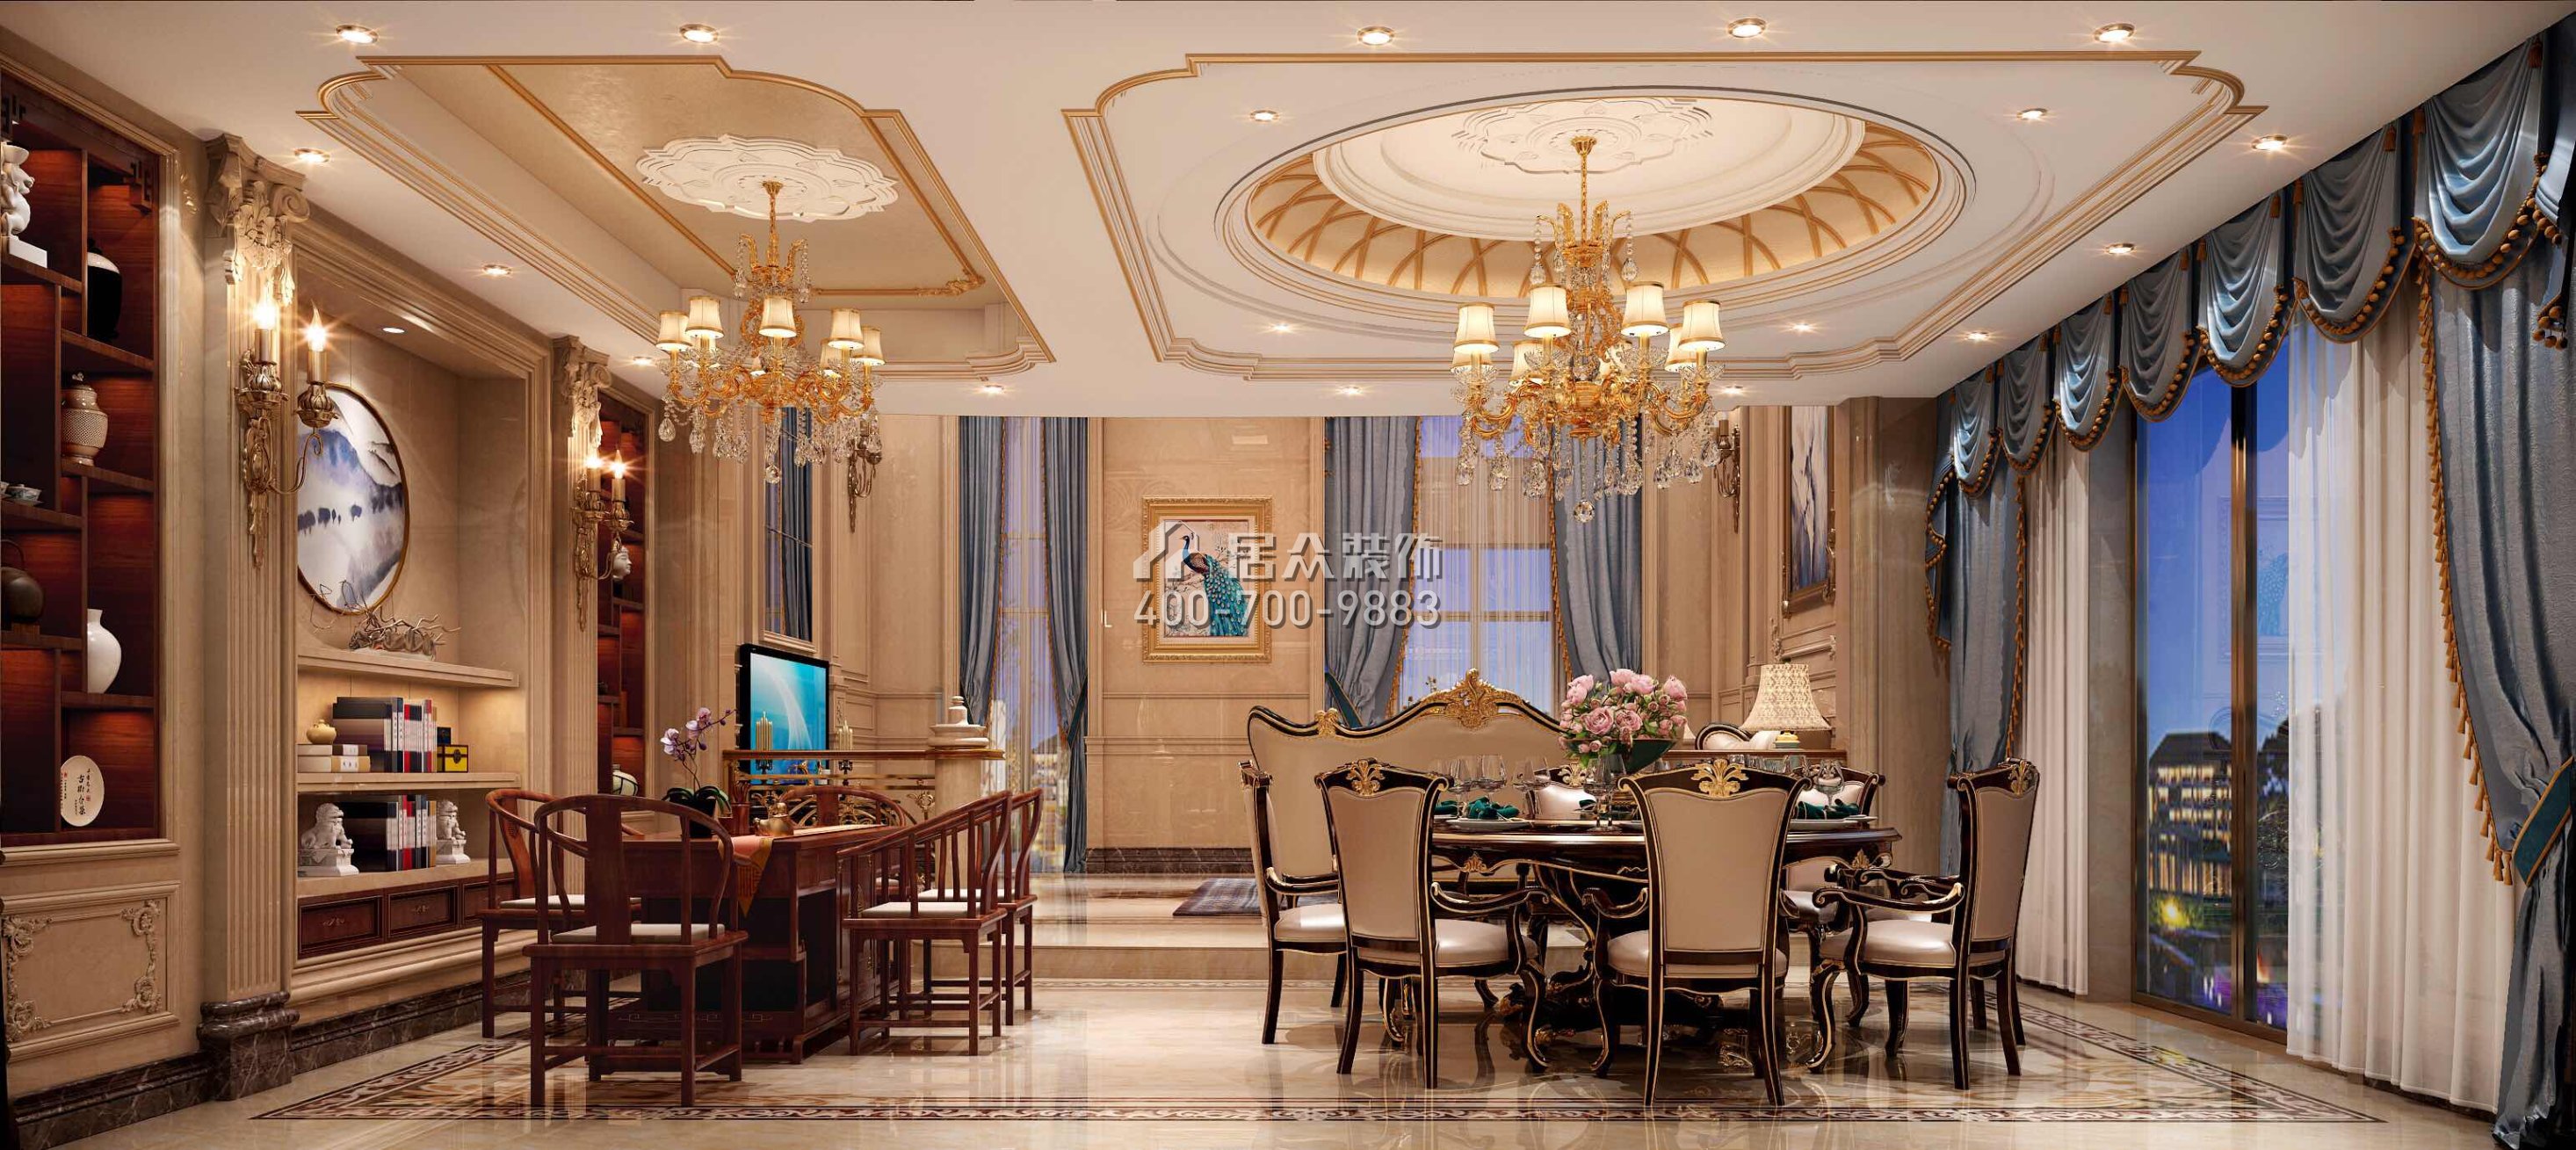 萬科紫臺260平方米歐式風格別墅戶型客餐廳一體裝修效果圖